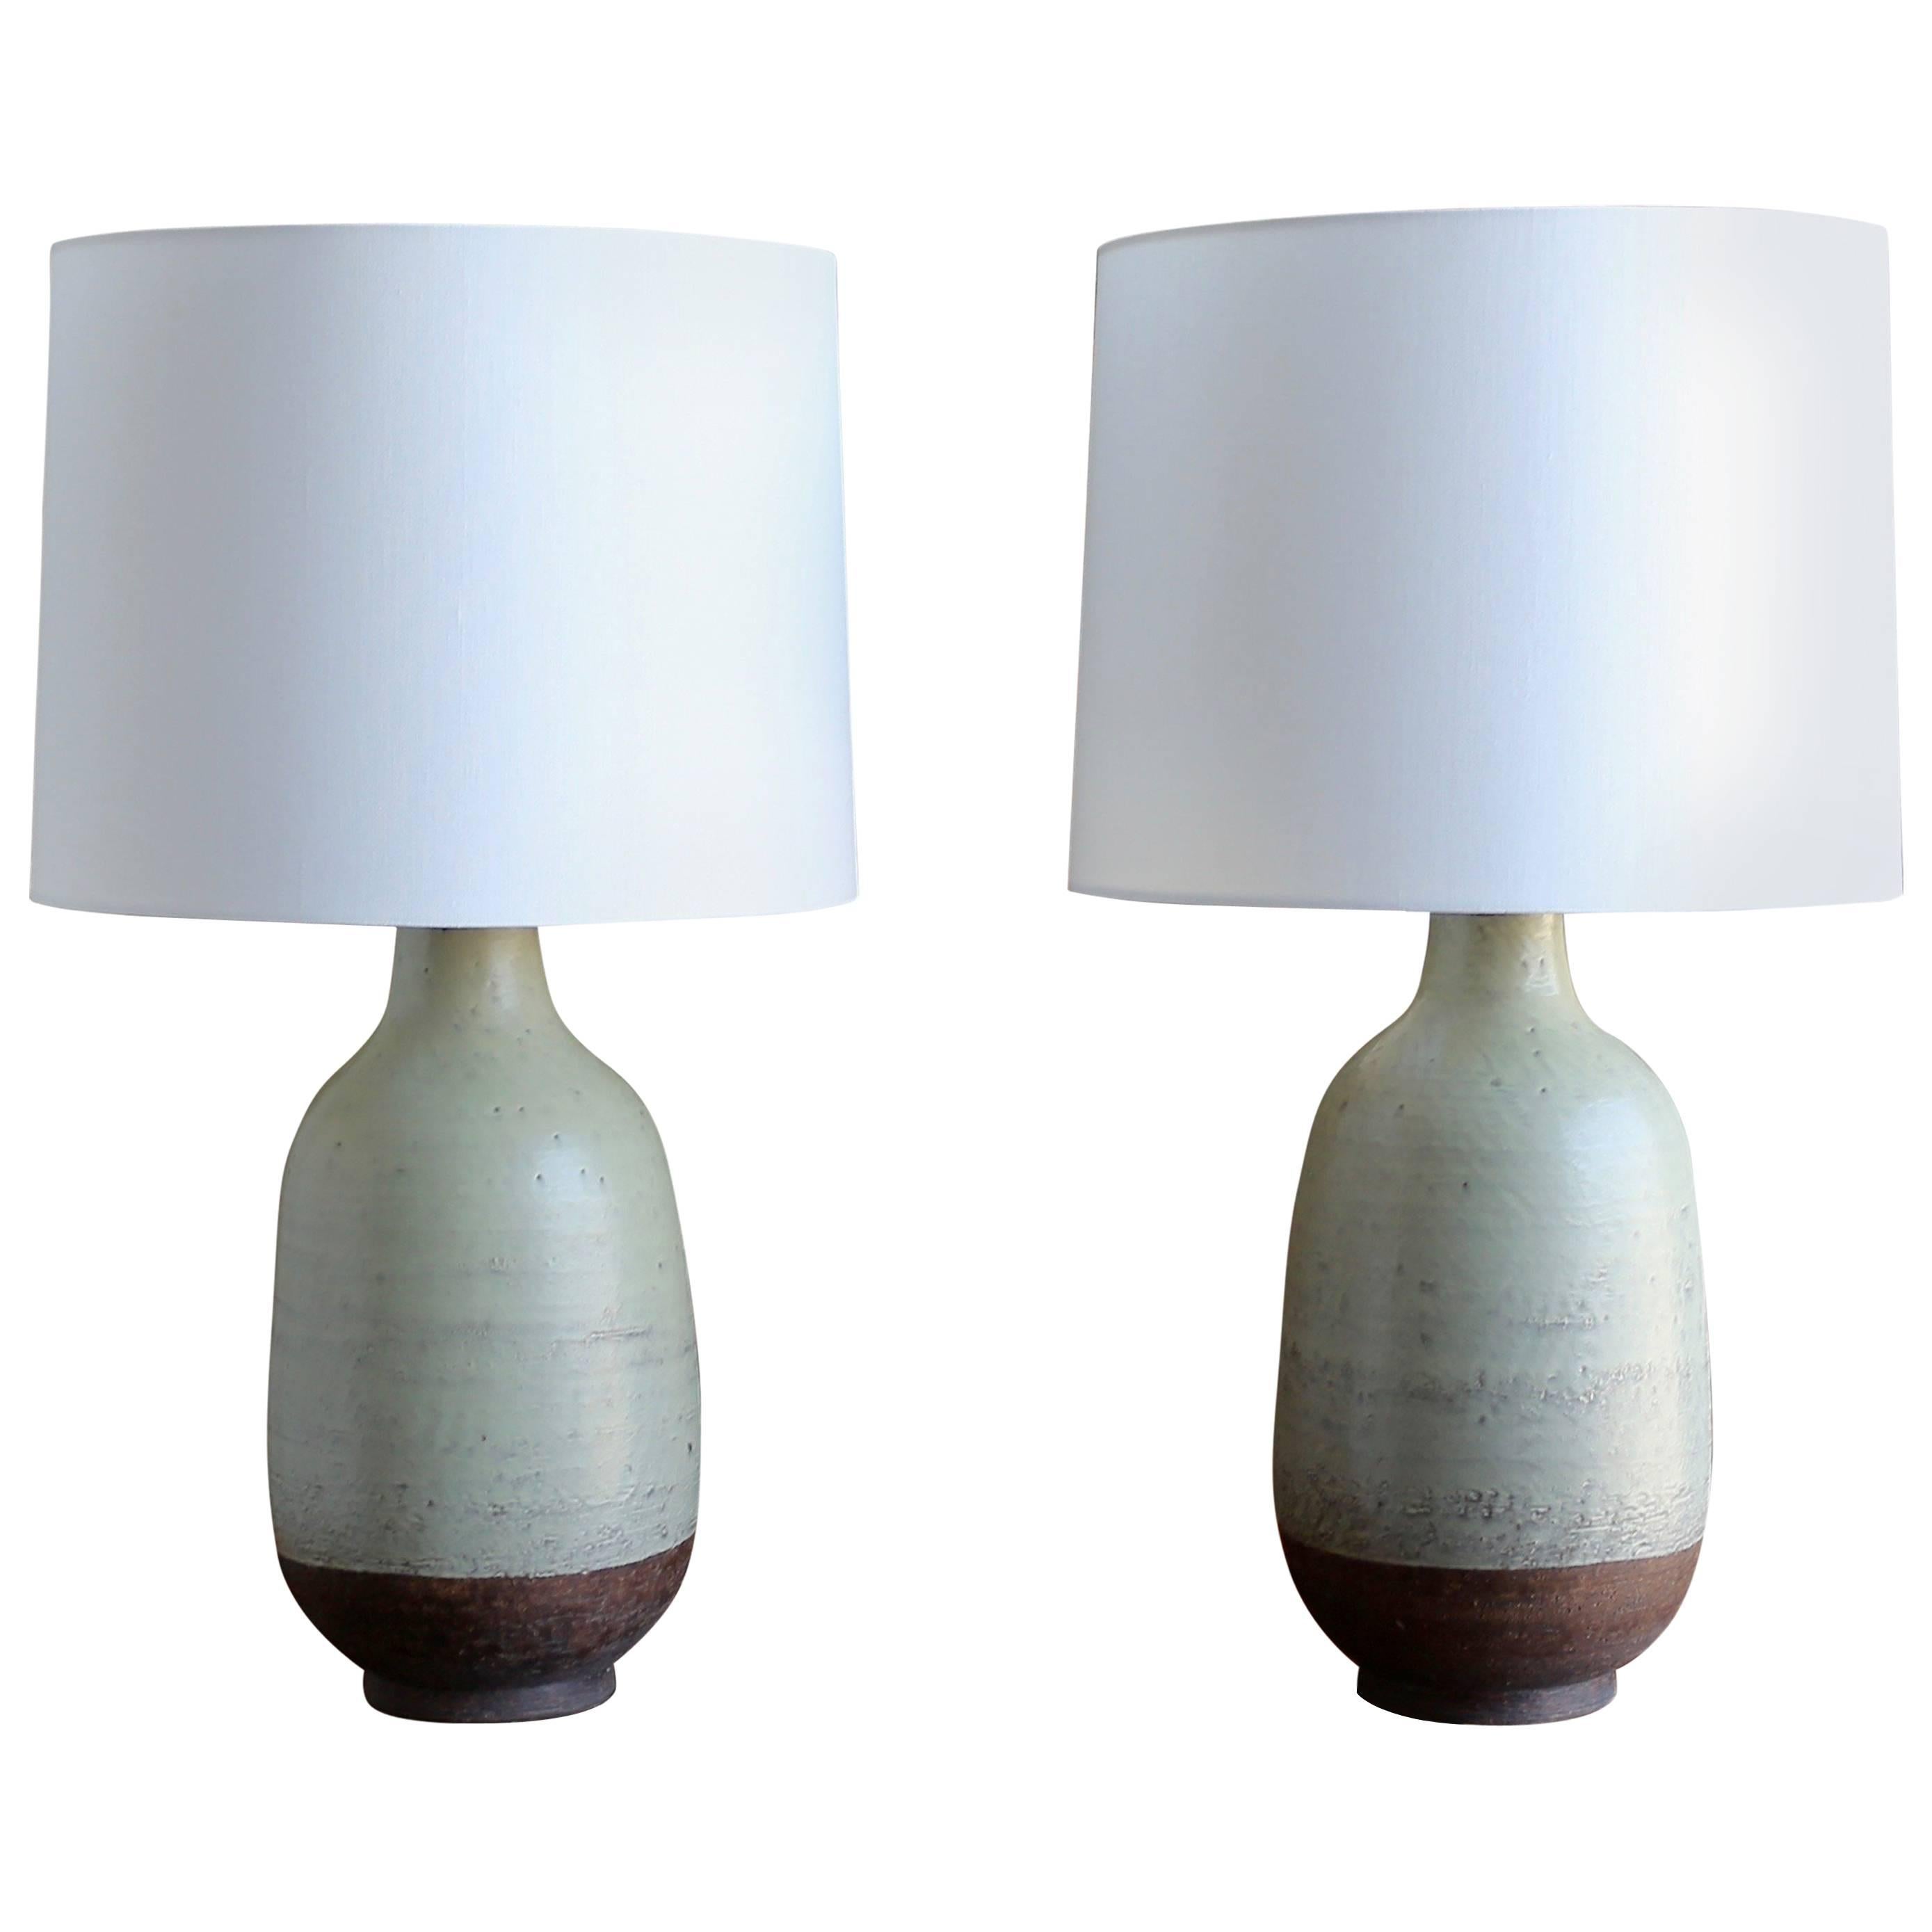 Aldo Londi for Bitossi Pair of Ceramic Lamps